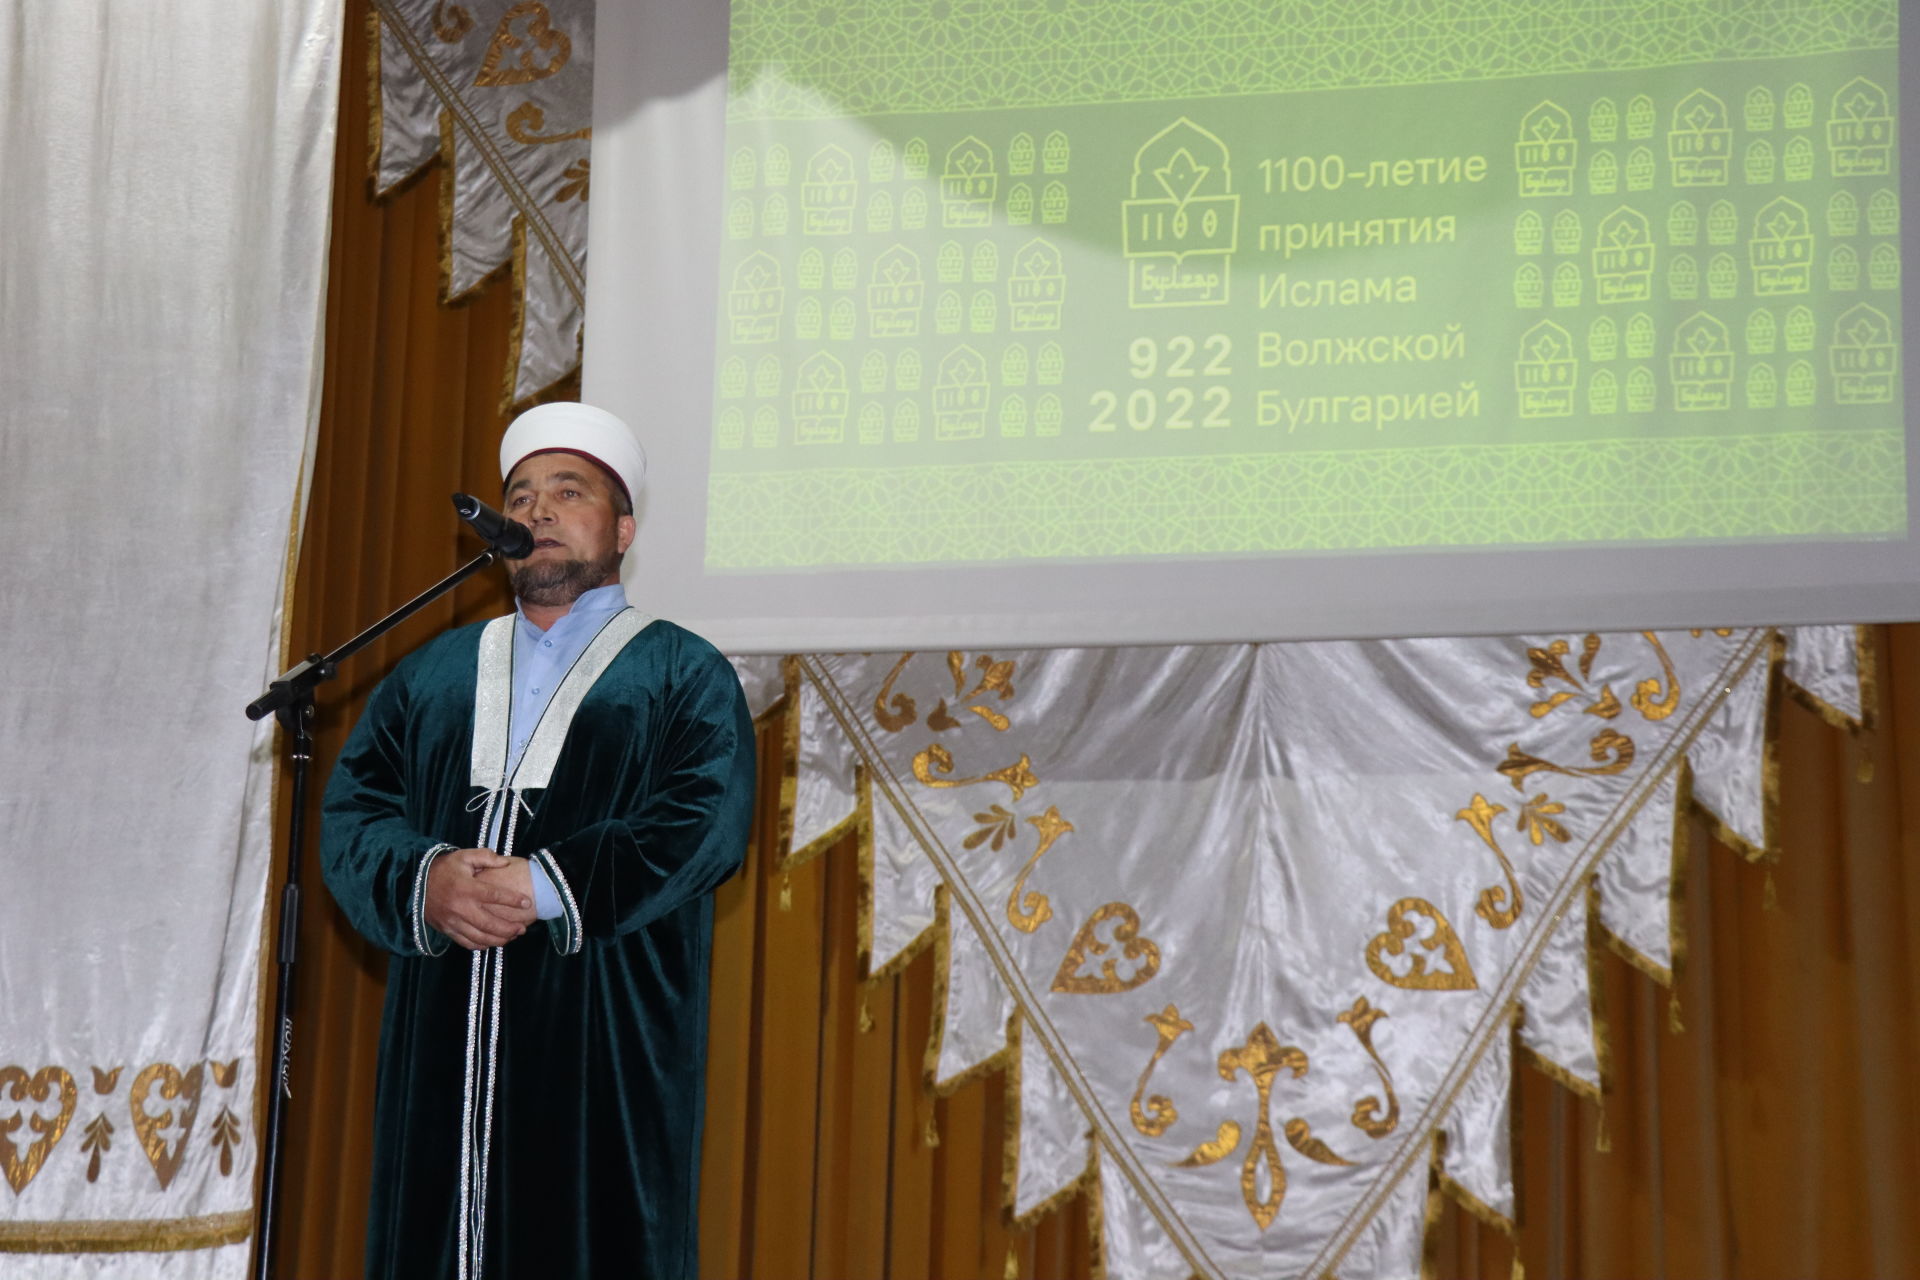 Ислам динен кабул итүгә 1100 ел тулуга багышланган бәйрәм чарасы-2022